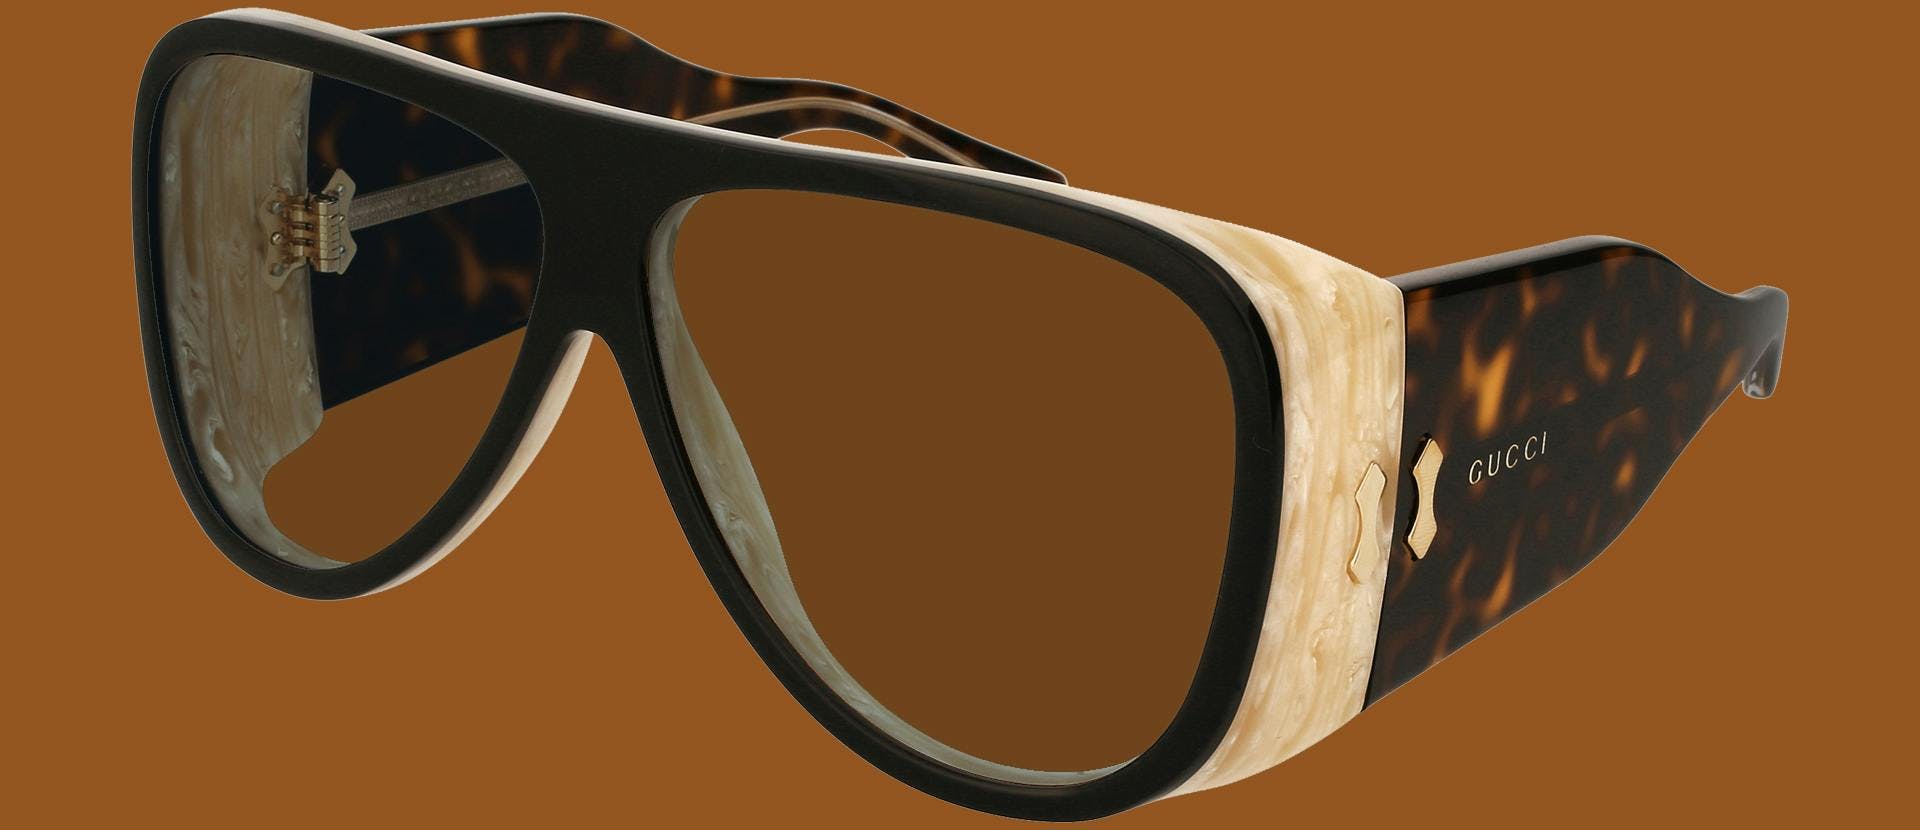 accessory accessories sunglasses goggles glasses